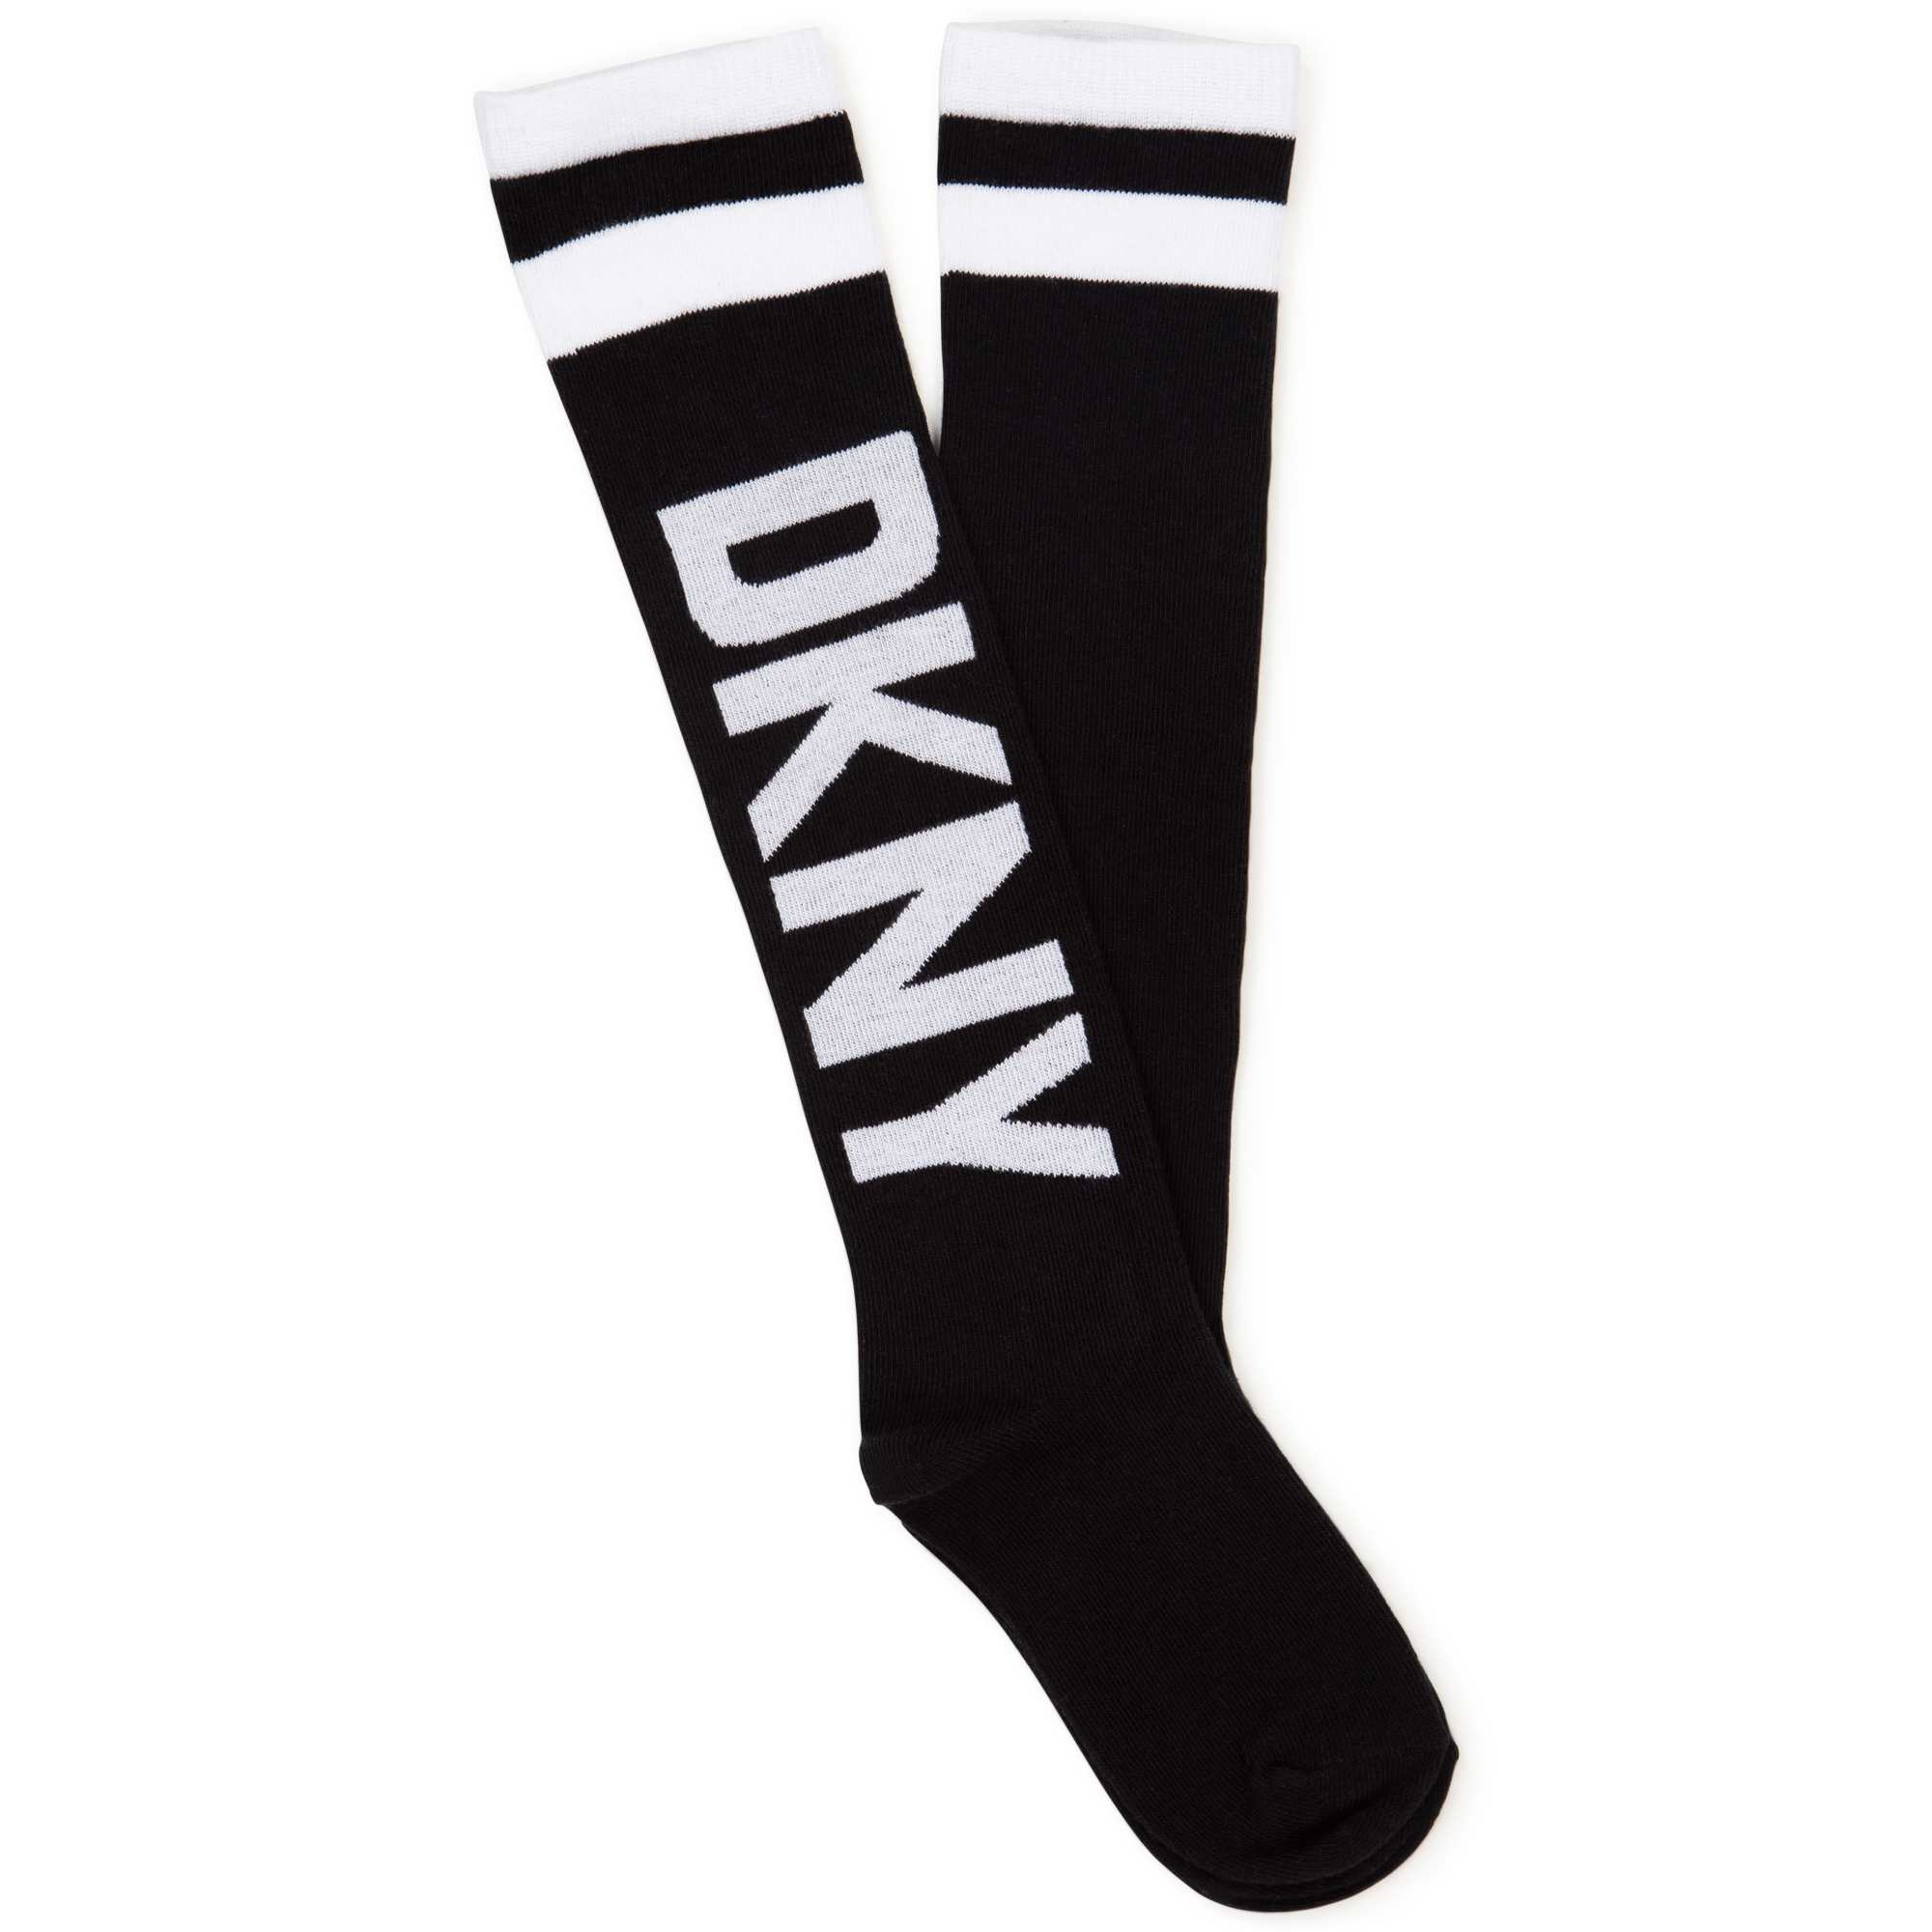 Cotton socks DKNY for GIRL